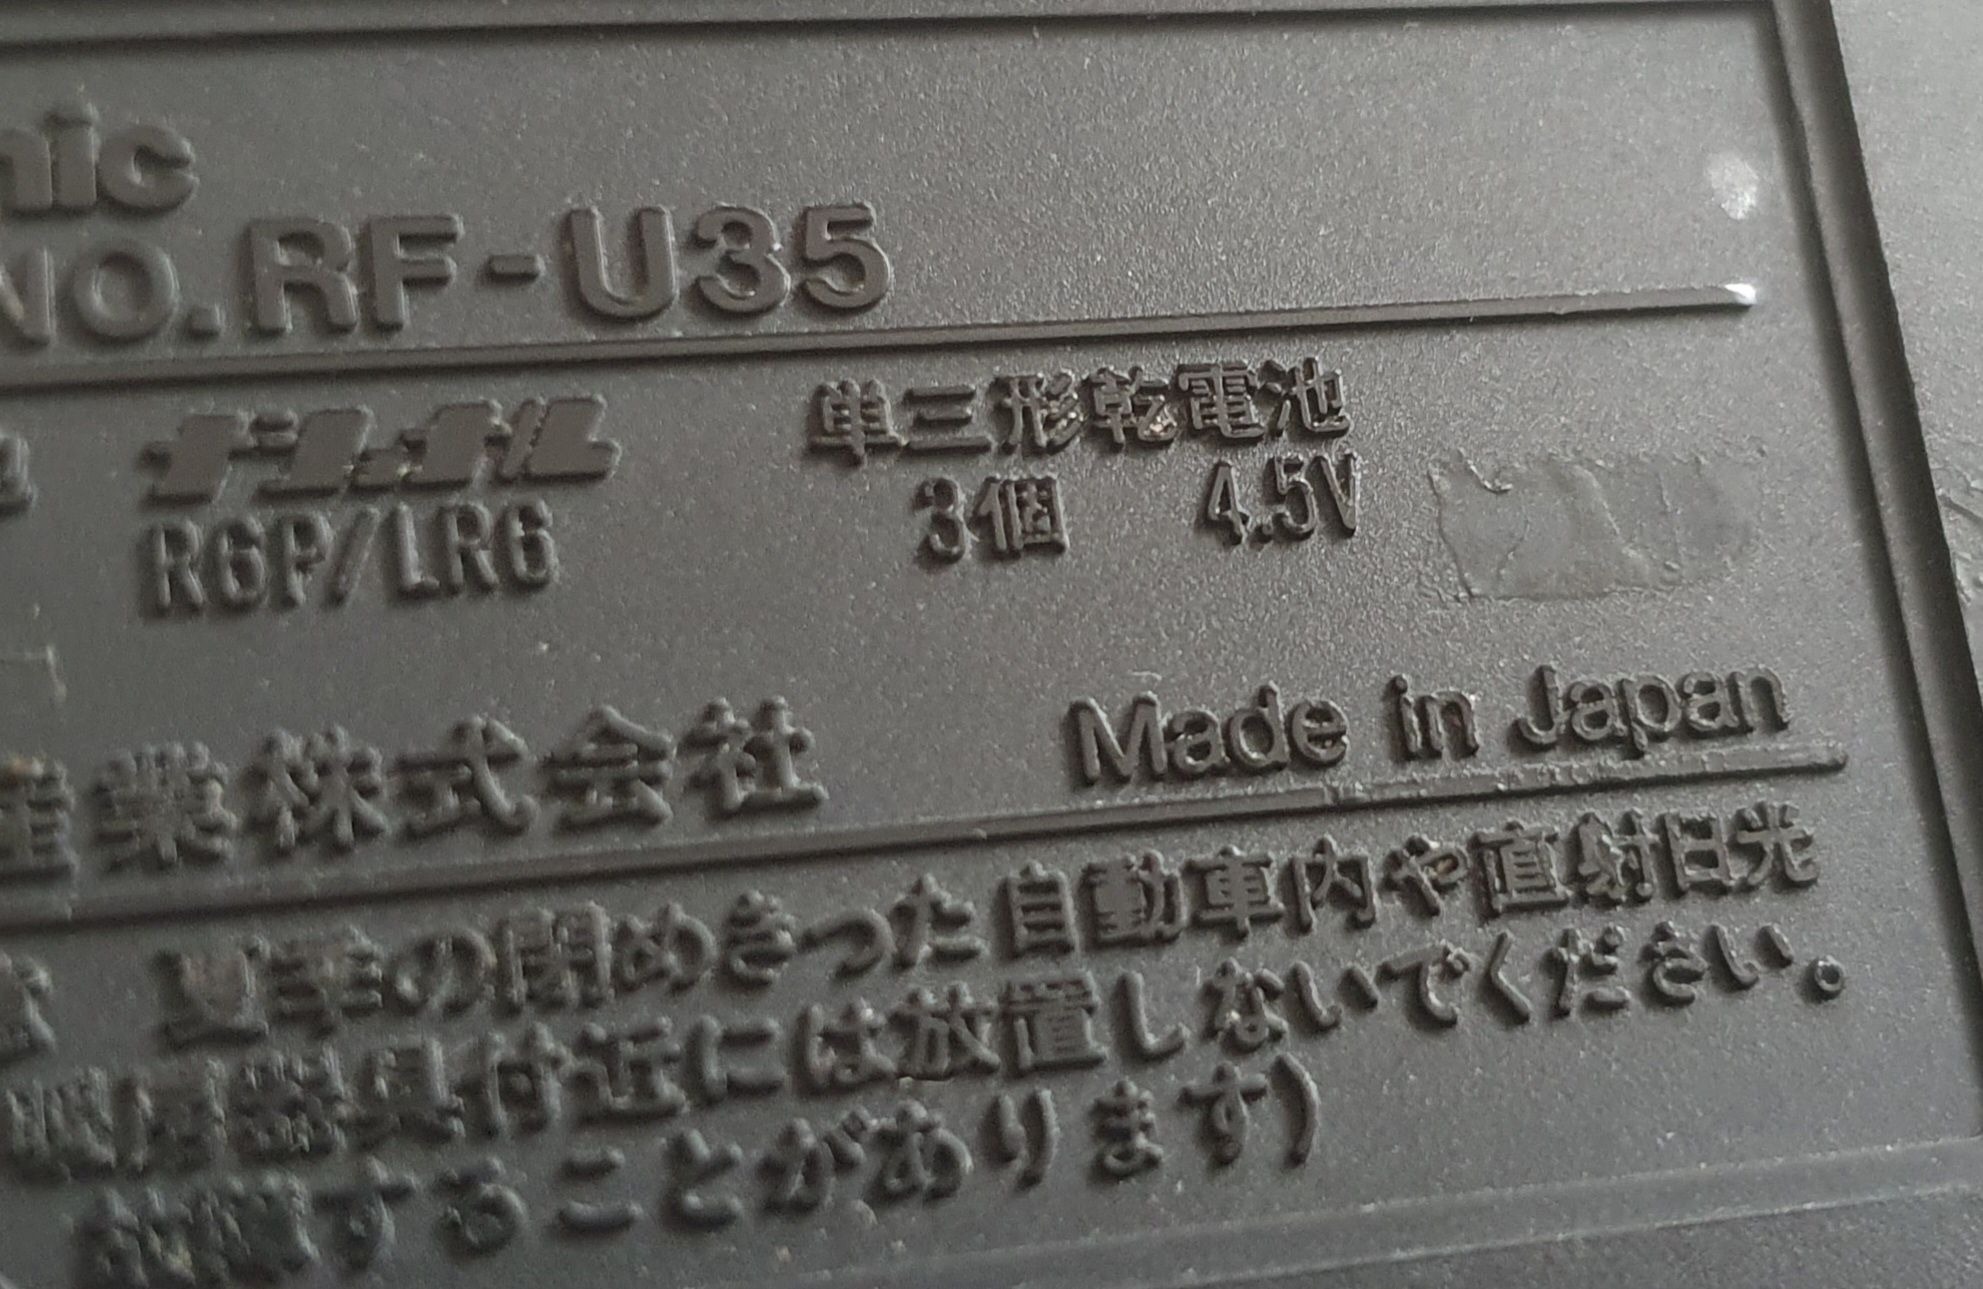 Радиоприёмник Panasonic RF-U35 Made in Japan (1989) Качество Звучание